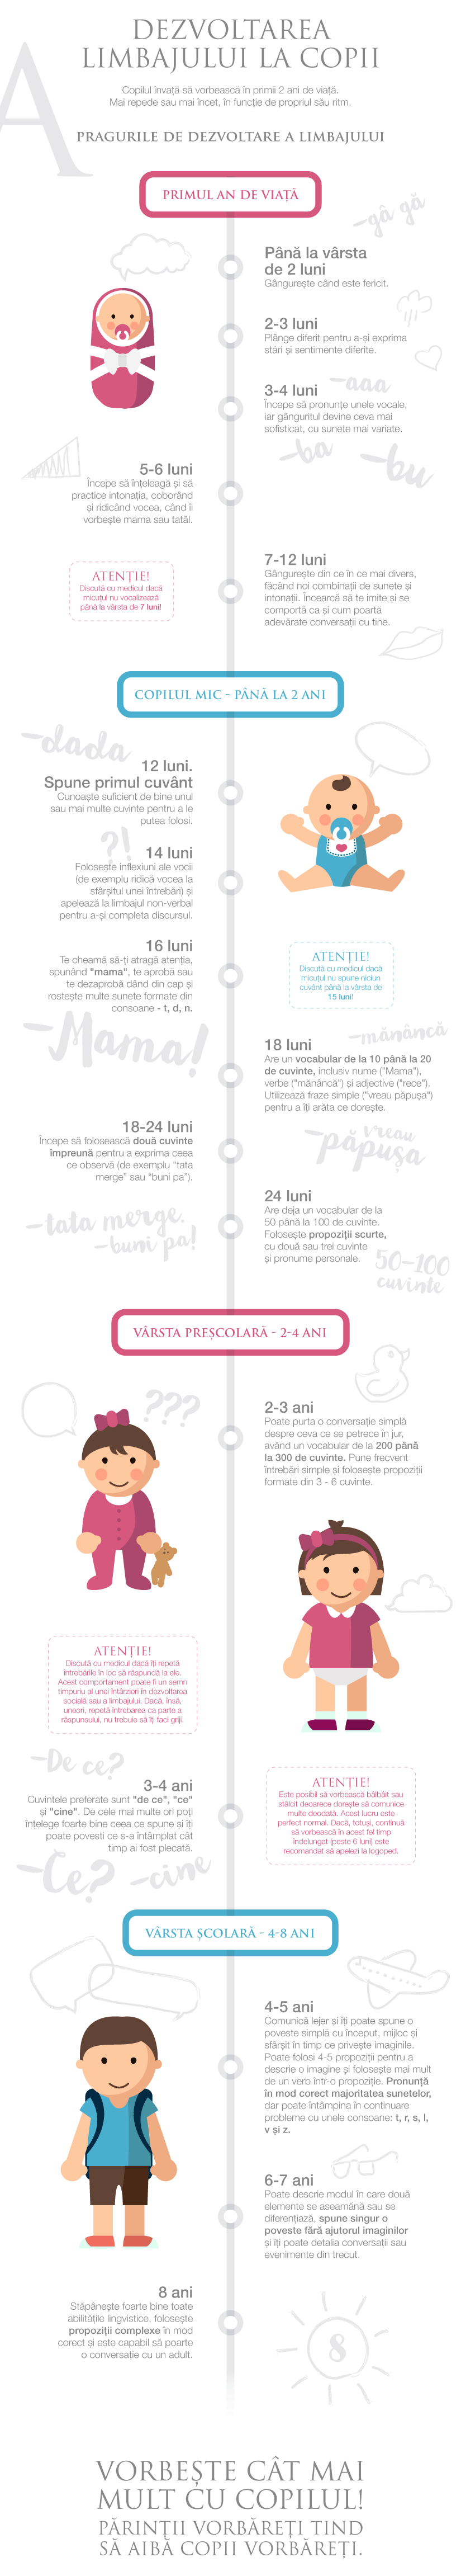 Dezvoltarea limbajului la copii (infografic)